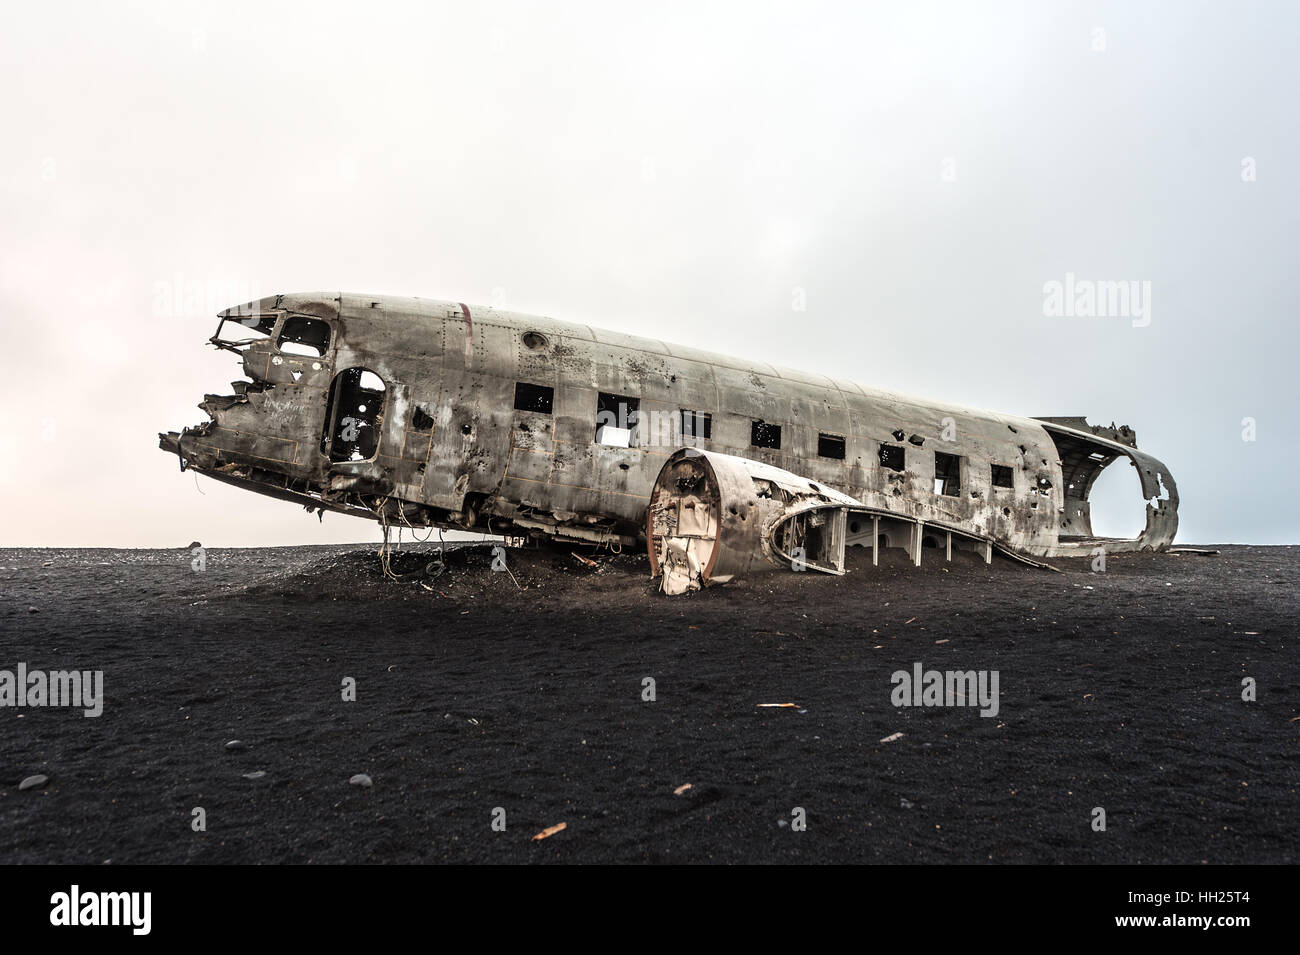 L'épave d'un avion militaire américain s'est écrasé en Islande Banque D'Images